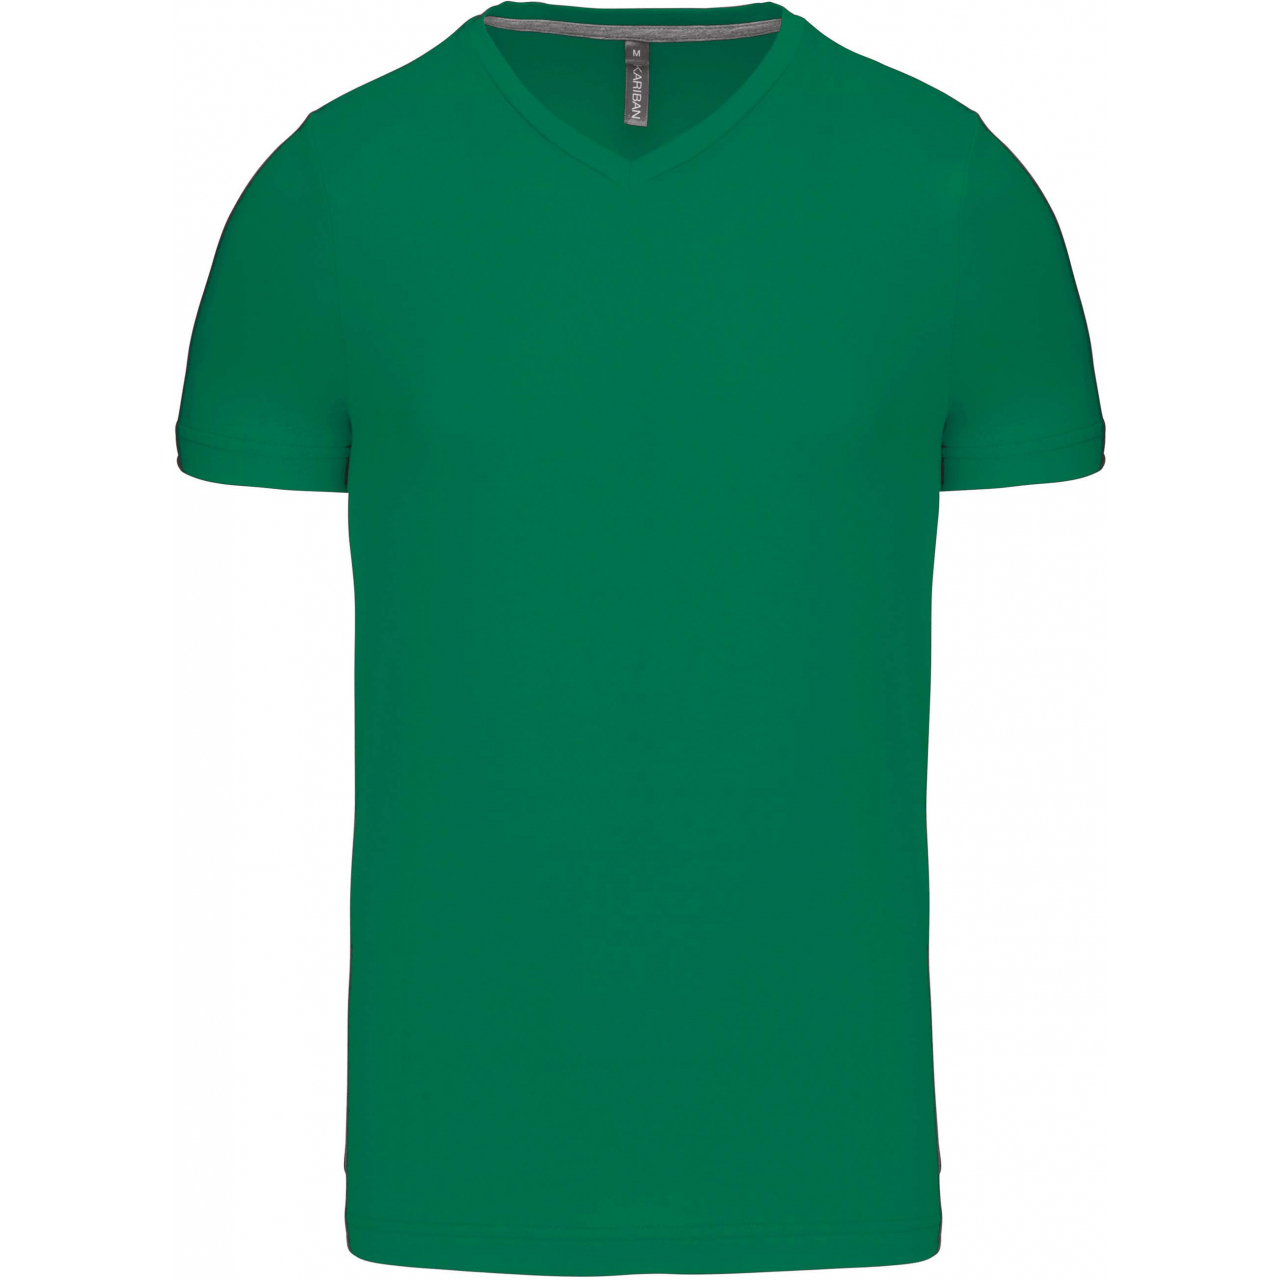 Pánské tričko Kariban krátký rukáv V-neck - zelené, XXL